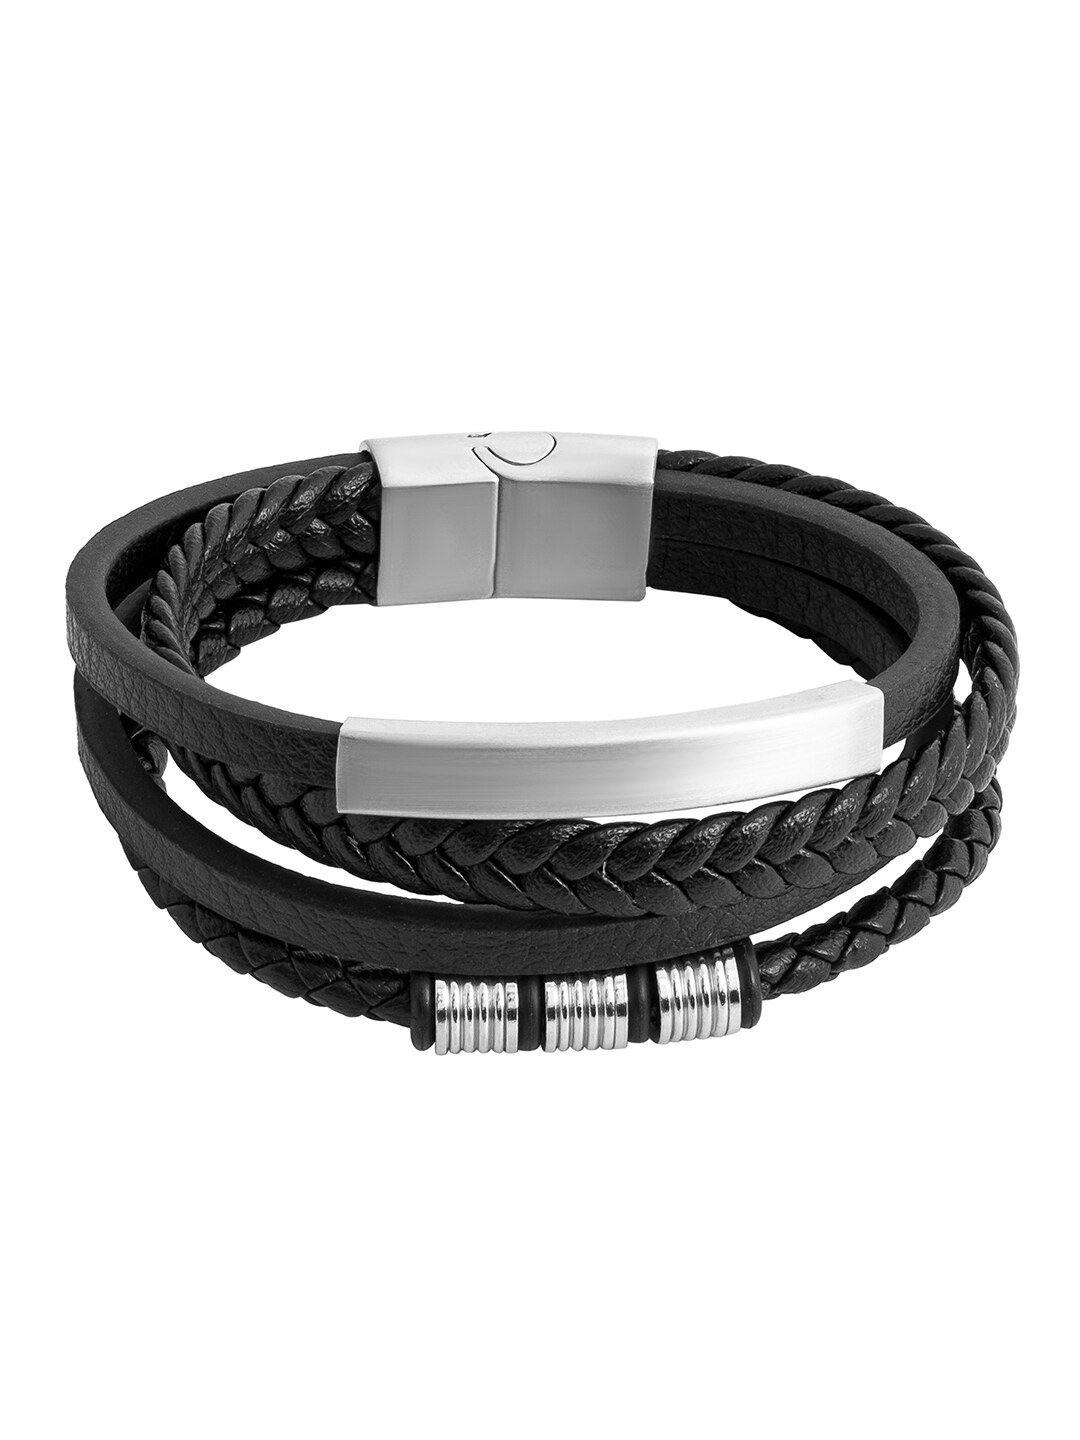 bodha men braided leather multistrand bracelet